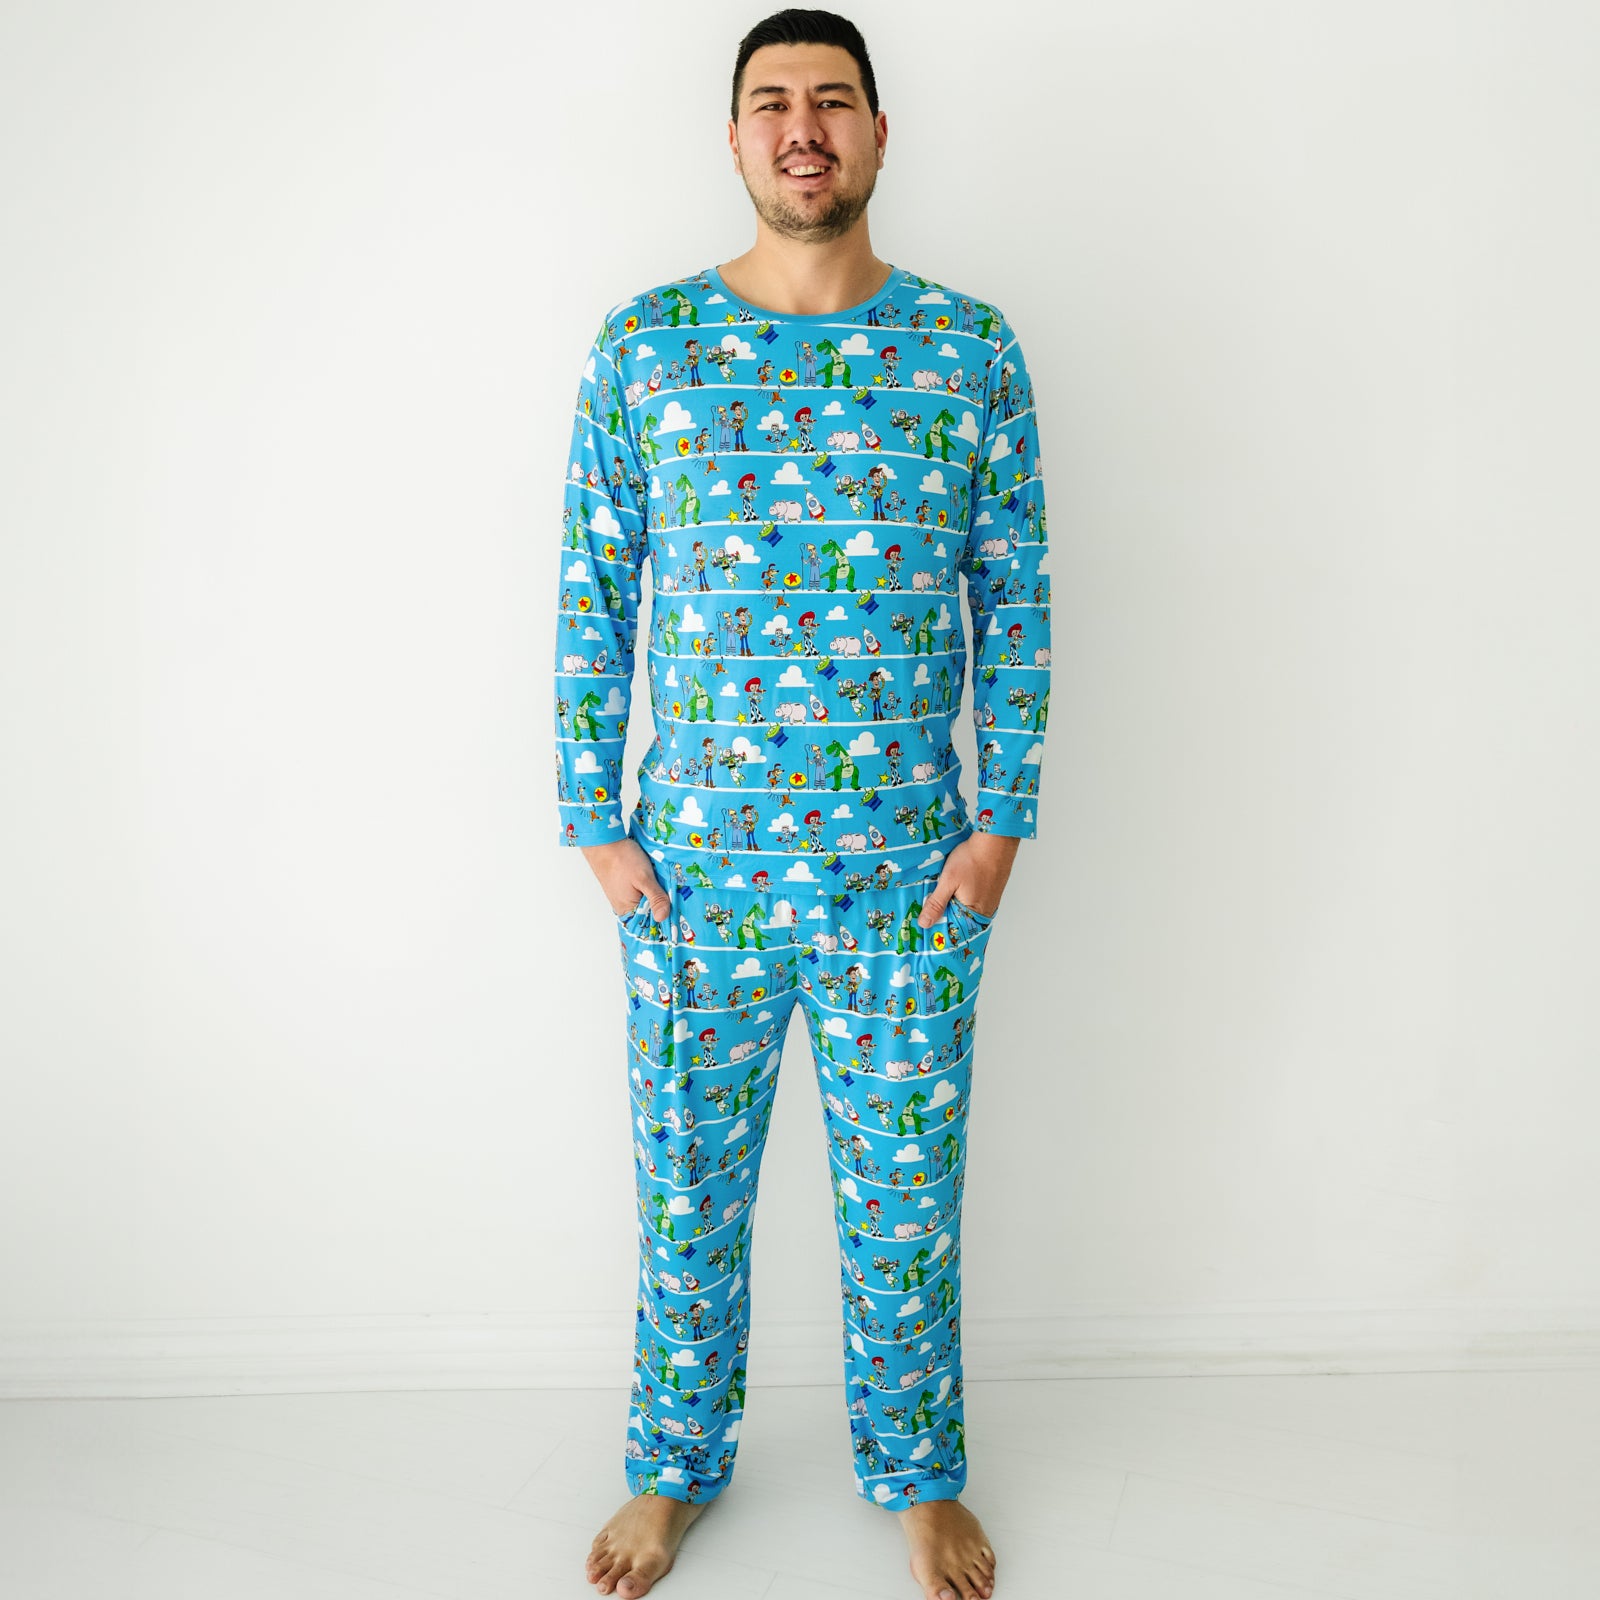 Man wearing a Disney Pixar Toy Story Pals men's pajama pants and matching pajama top